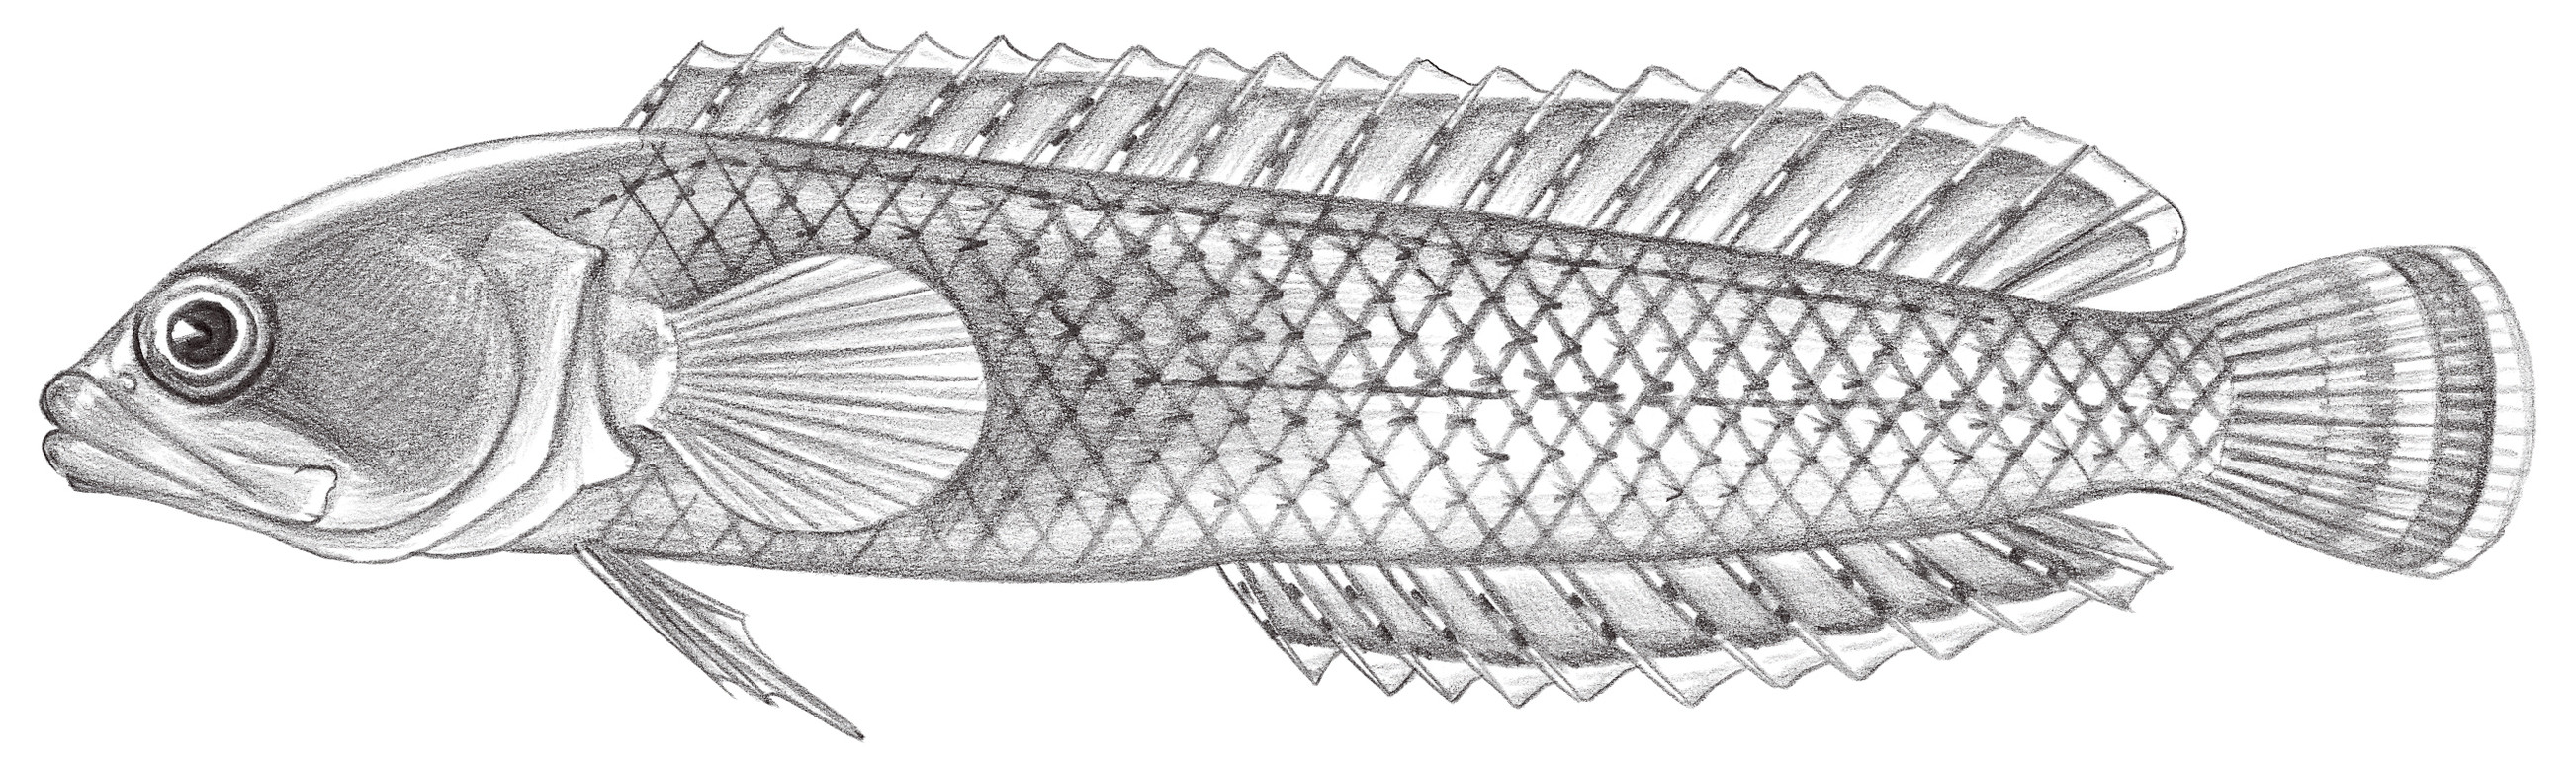 1116.	針鰭銀寶魚 Beliops batanensis Smith-Vaniz & Johnson, 1990